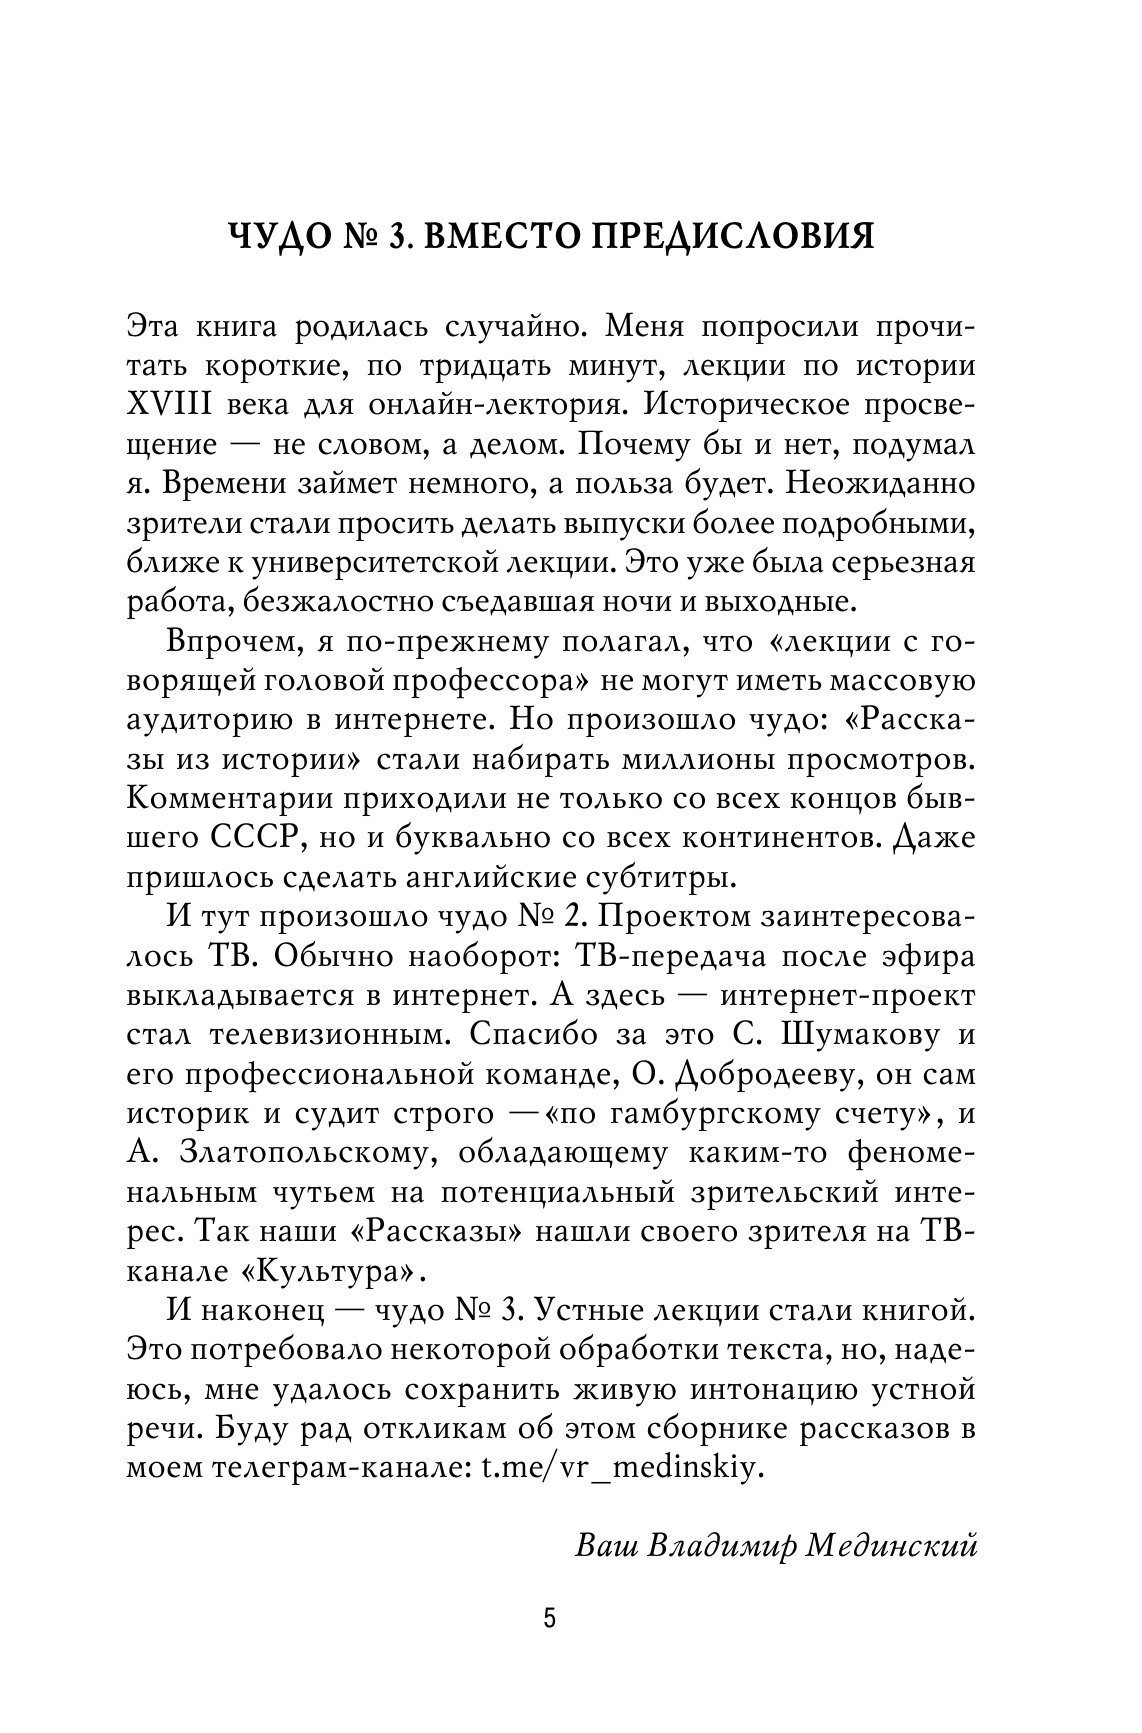 Рассказы из русской истории. XVIII век 9